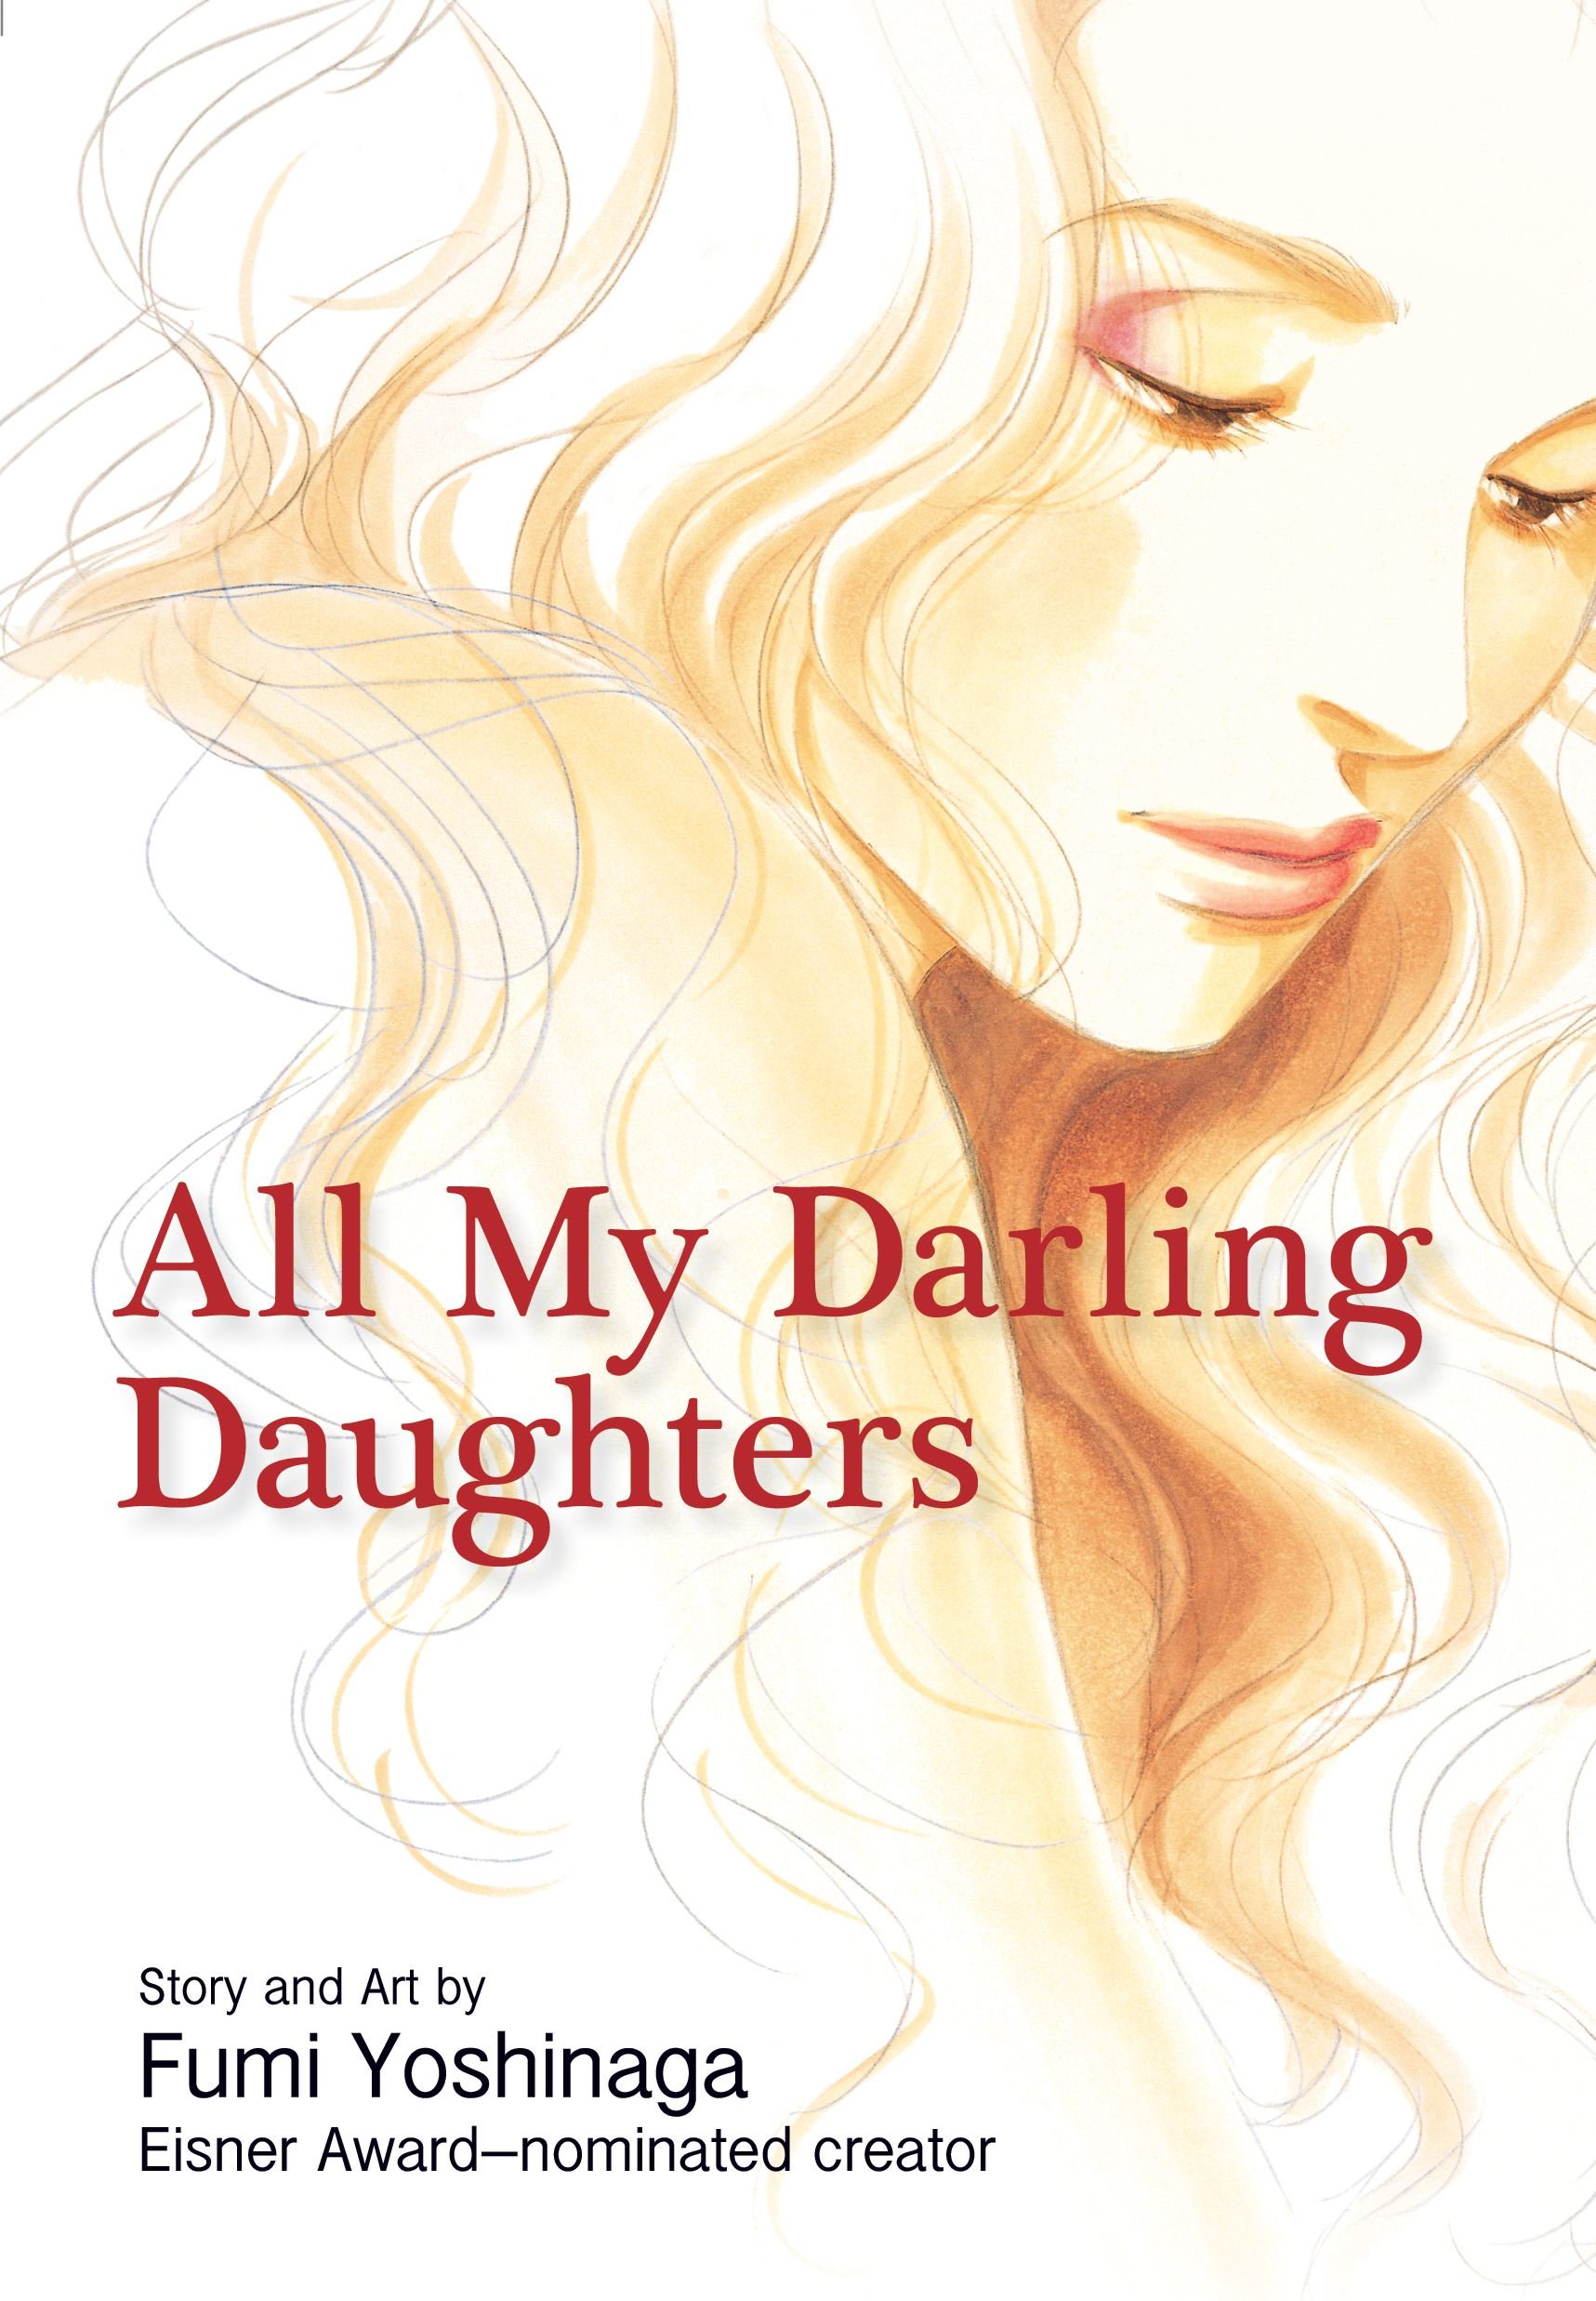 All My Darling Daughters by Fumi Yoshinaga